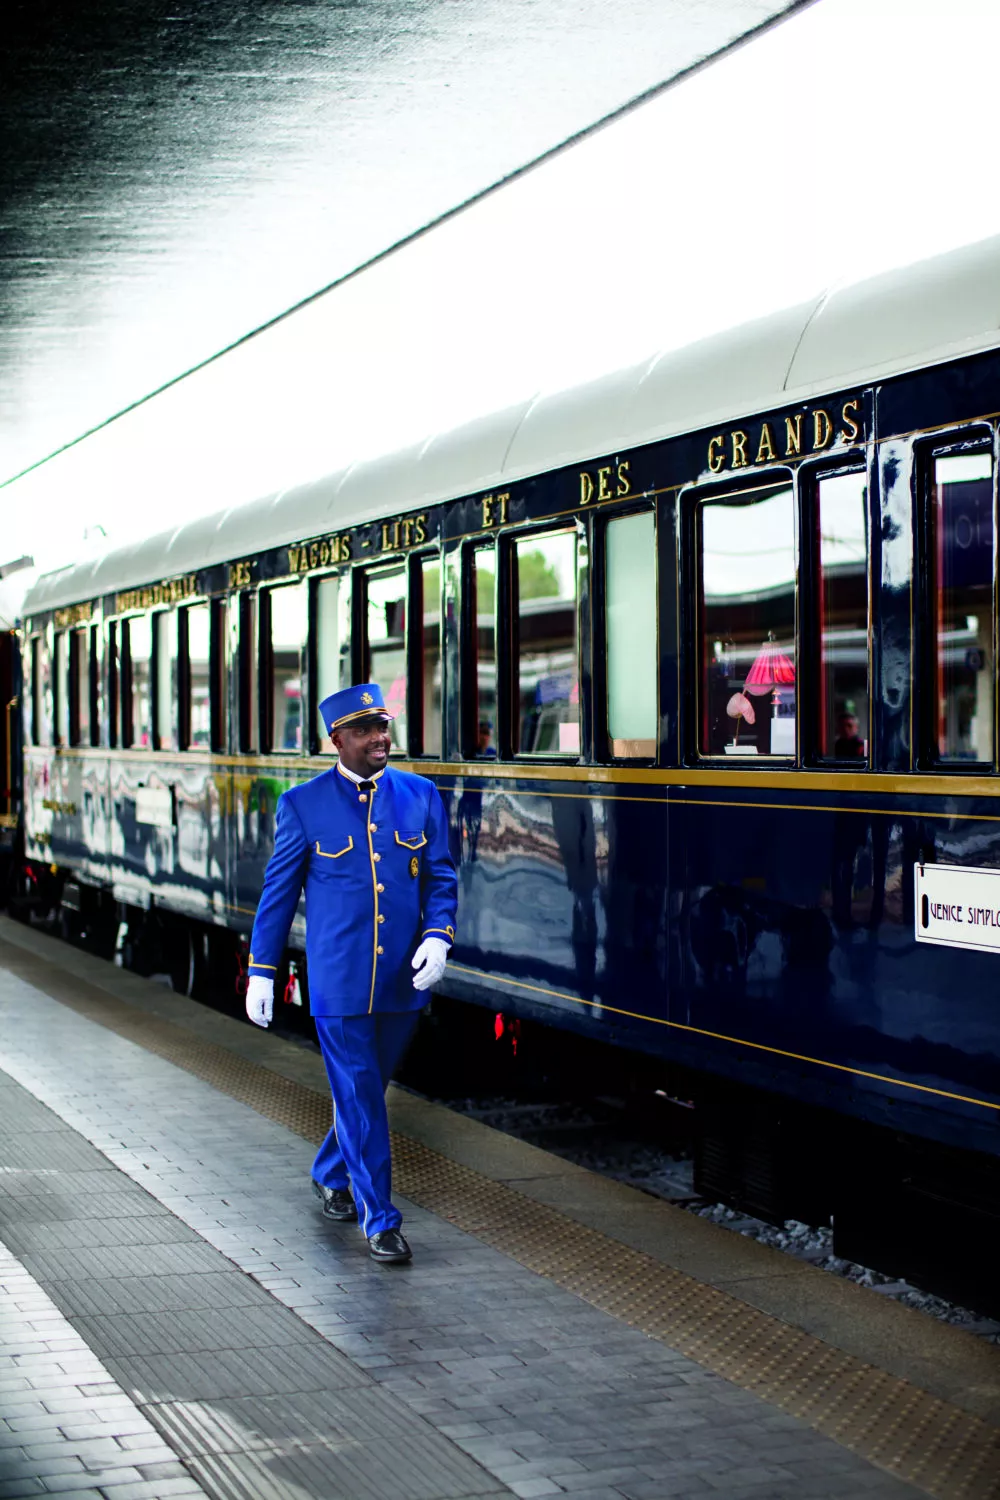 Belmond's legendary Venice Simplon-Orient-Express travels from